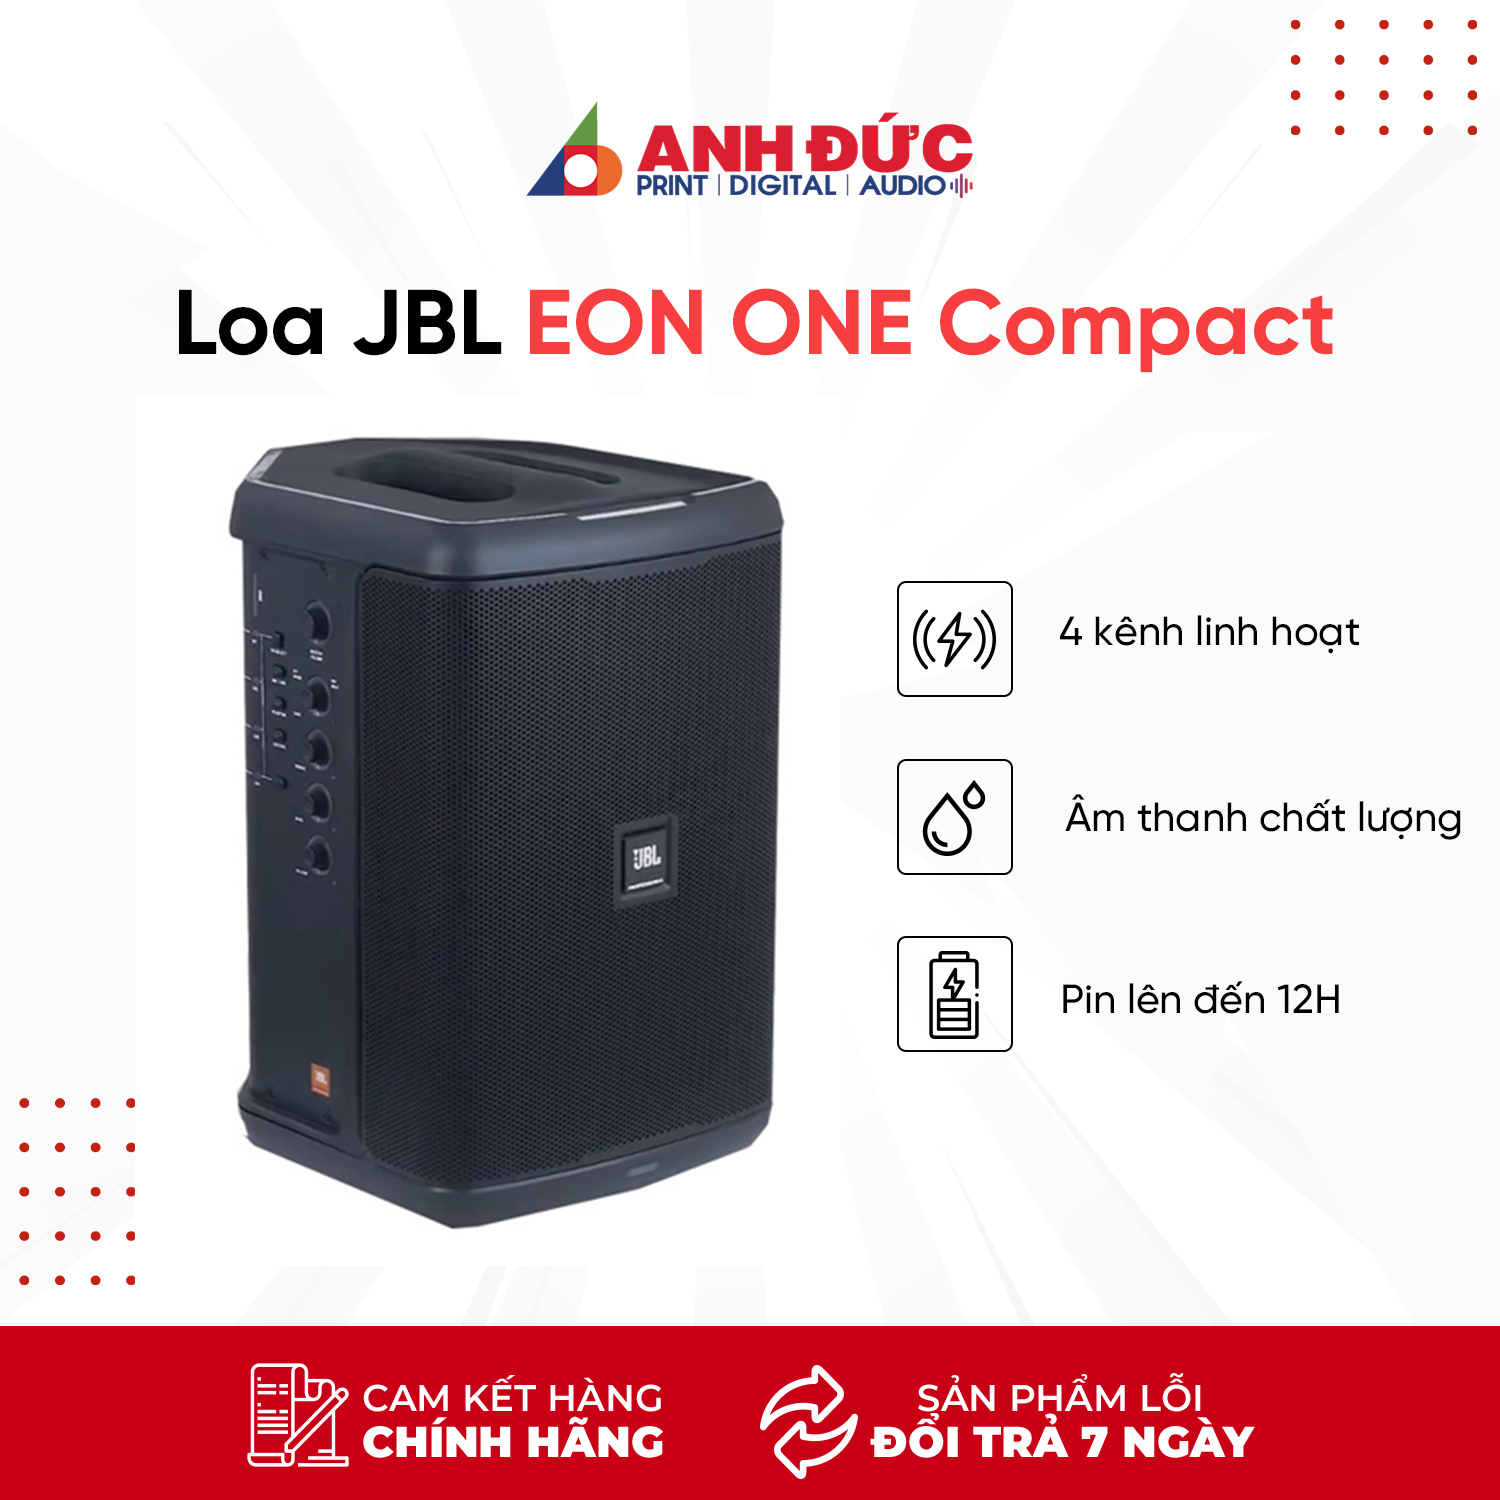 (Tặng Balo Eon One Compact) Loa JBL EON ONE Compact - Thời Gian Sử Dụng 12 Giờ - Hàng Chính Hãng PGI